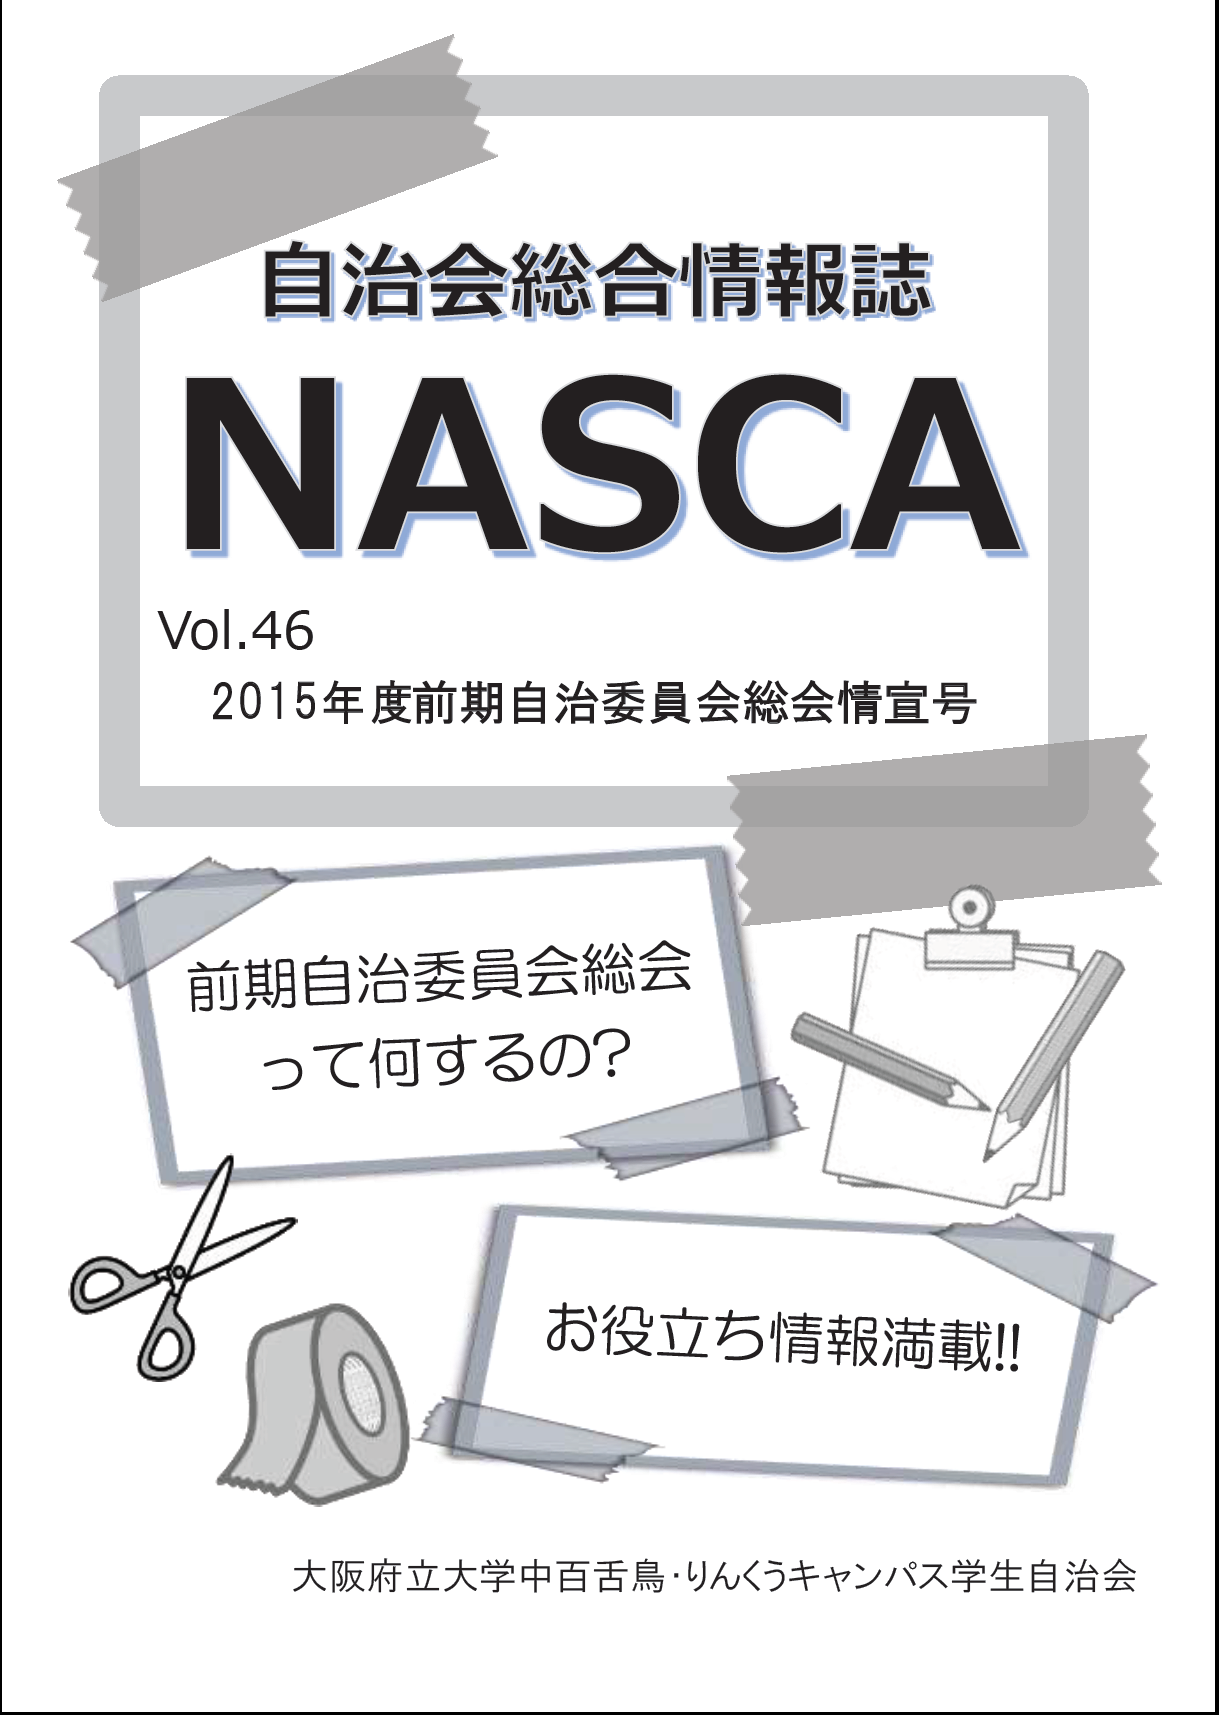 NASCA vol.46表紙